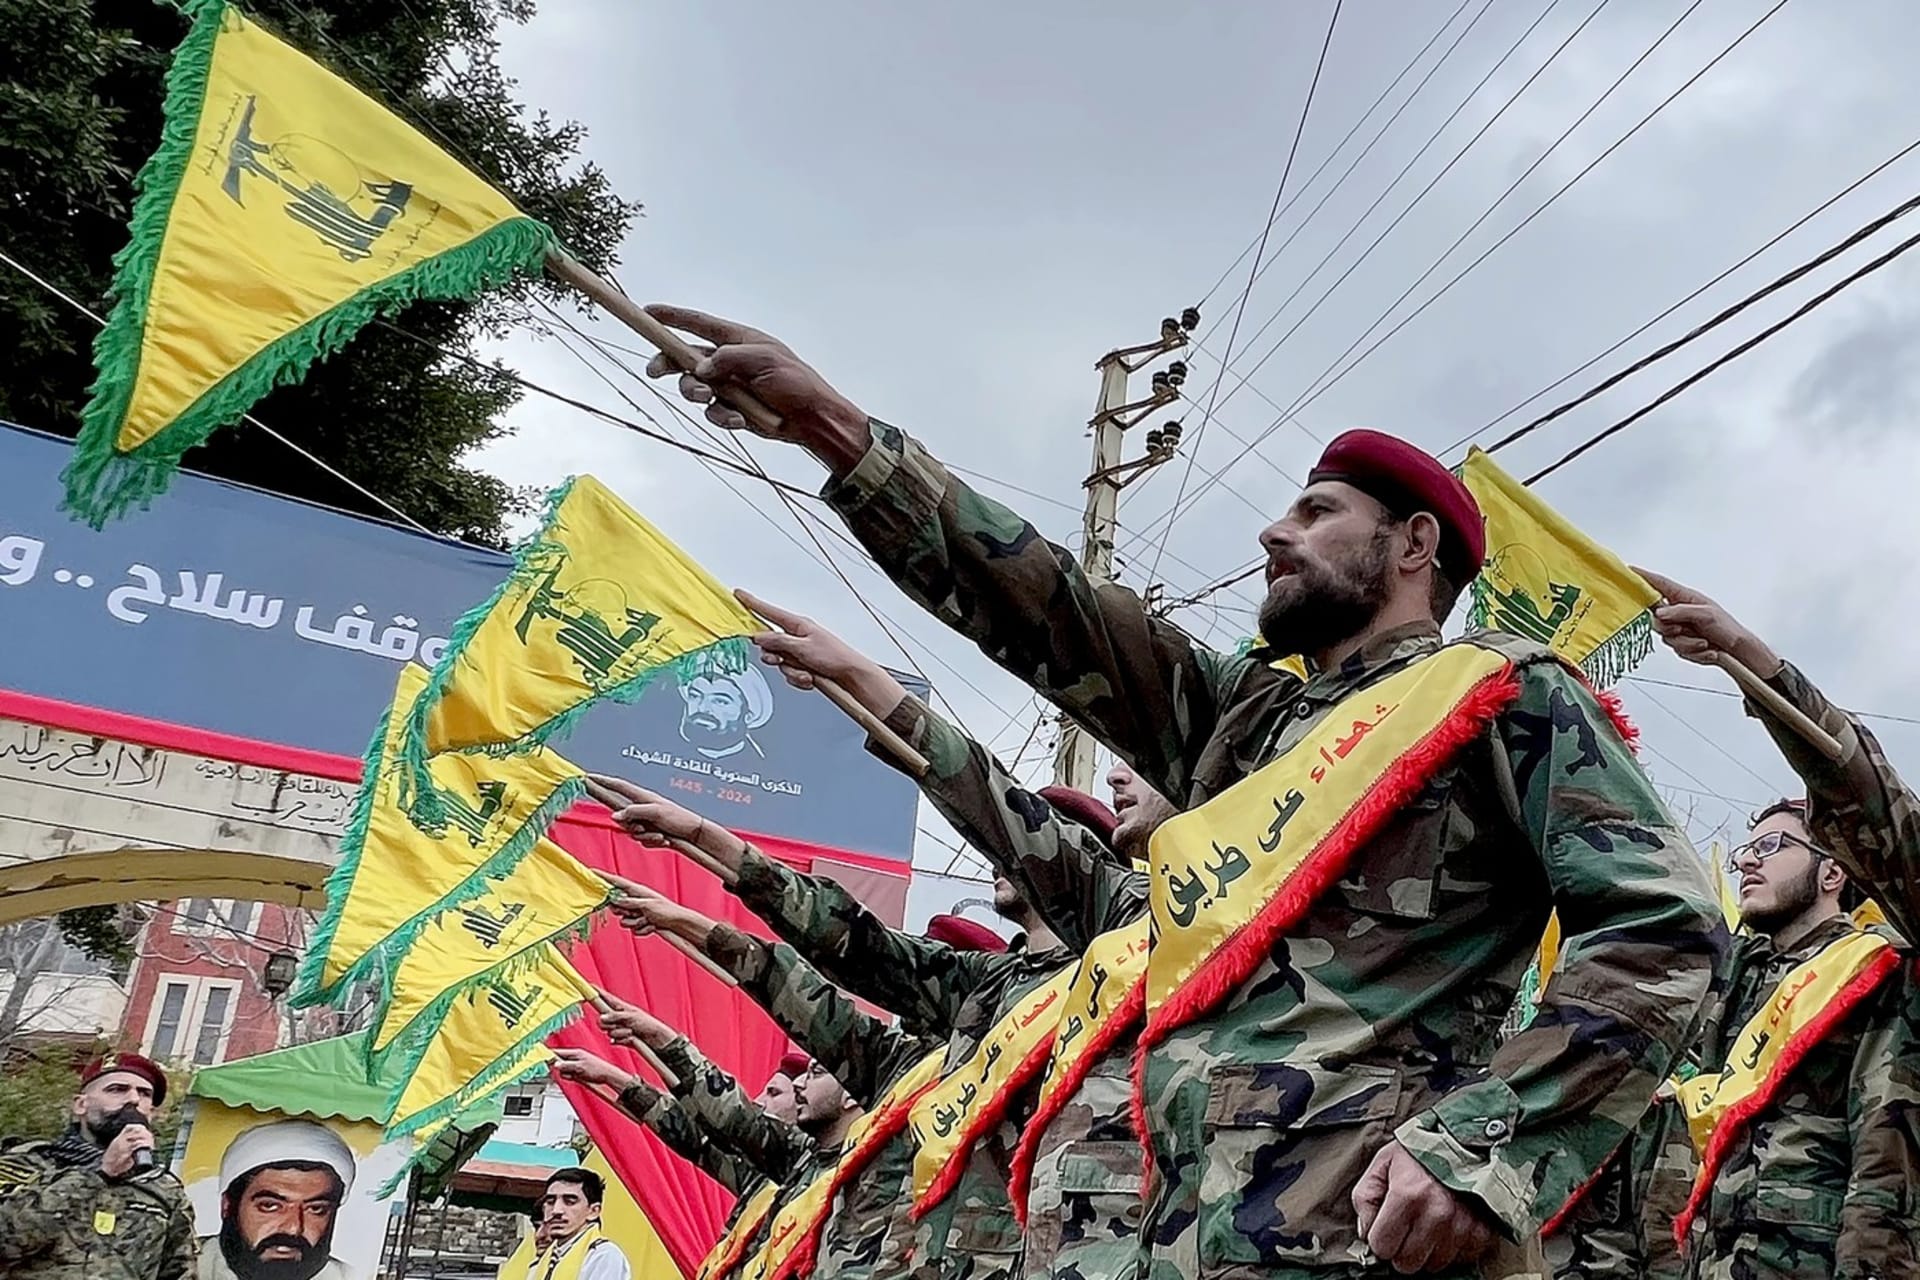 Bojovníci radikálního islámského hnutí z Libanonu Hizballáh